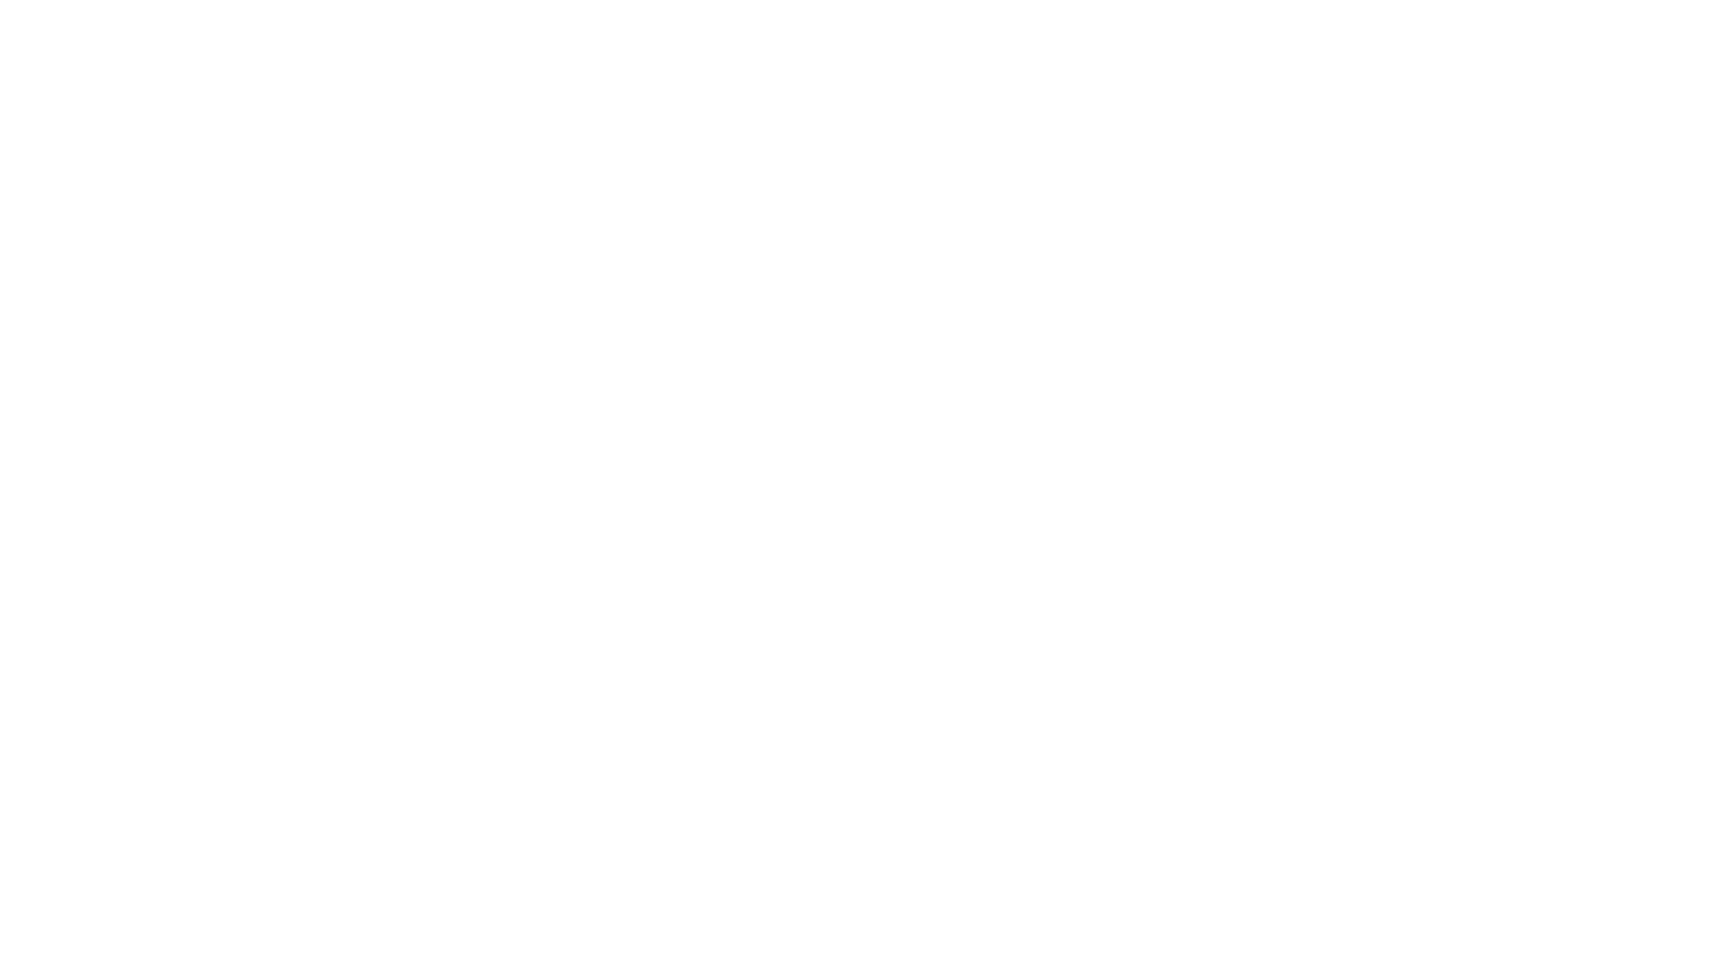 JOHN ZENG